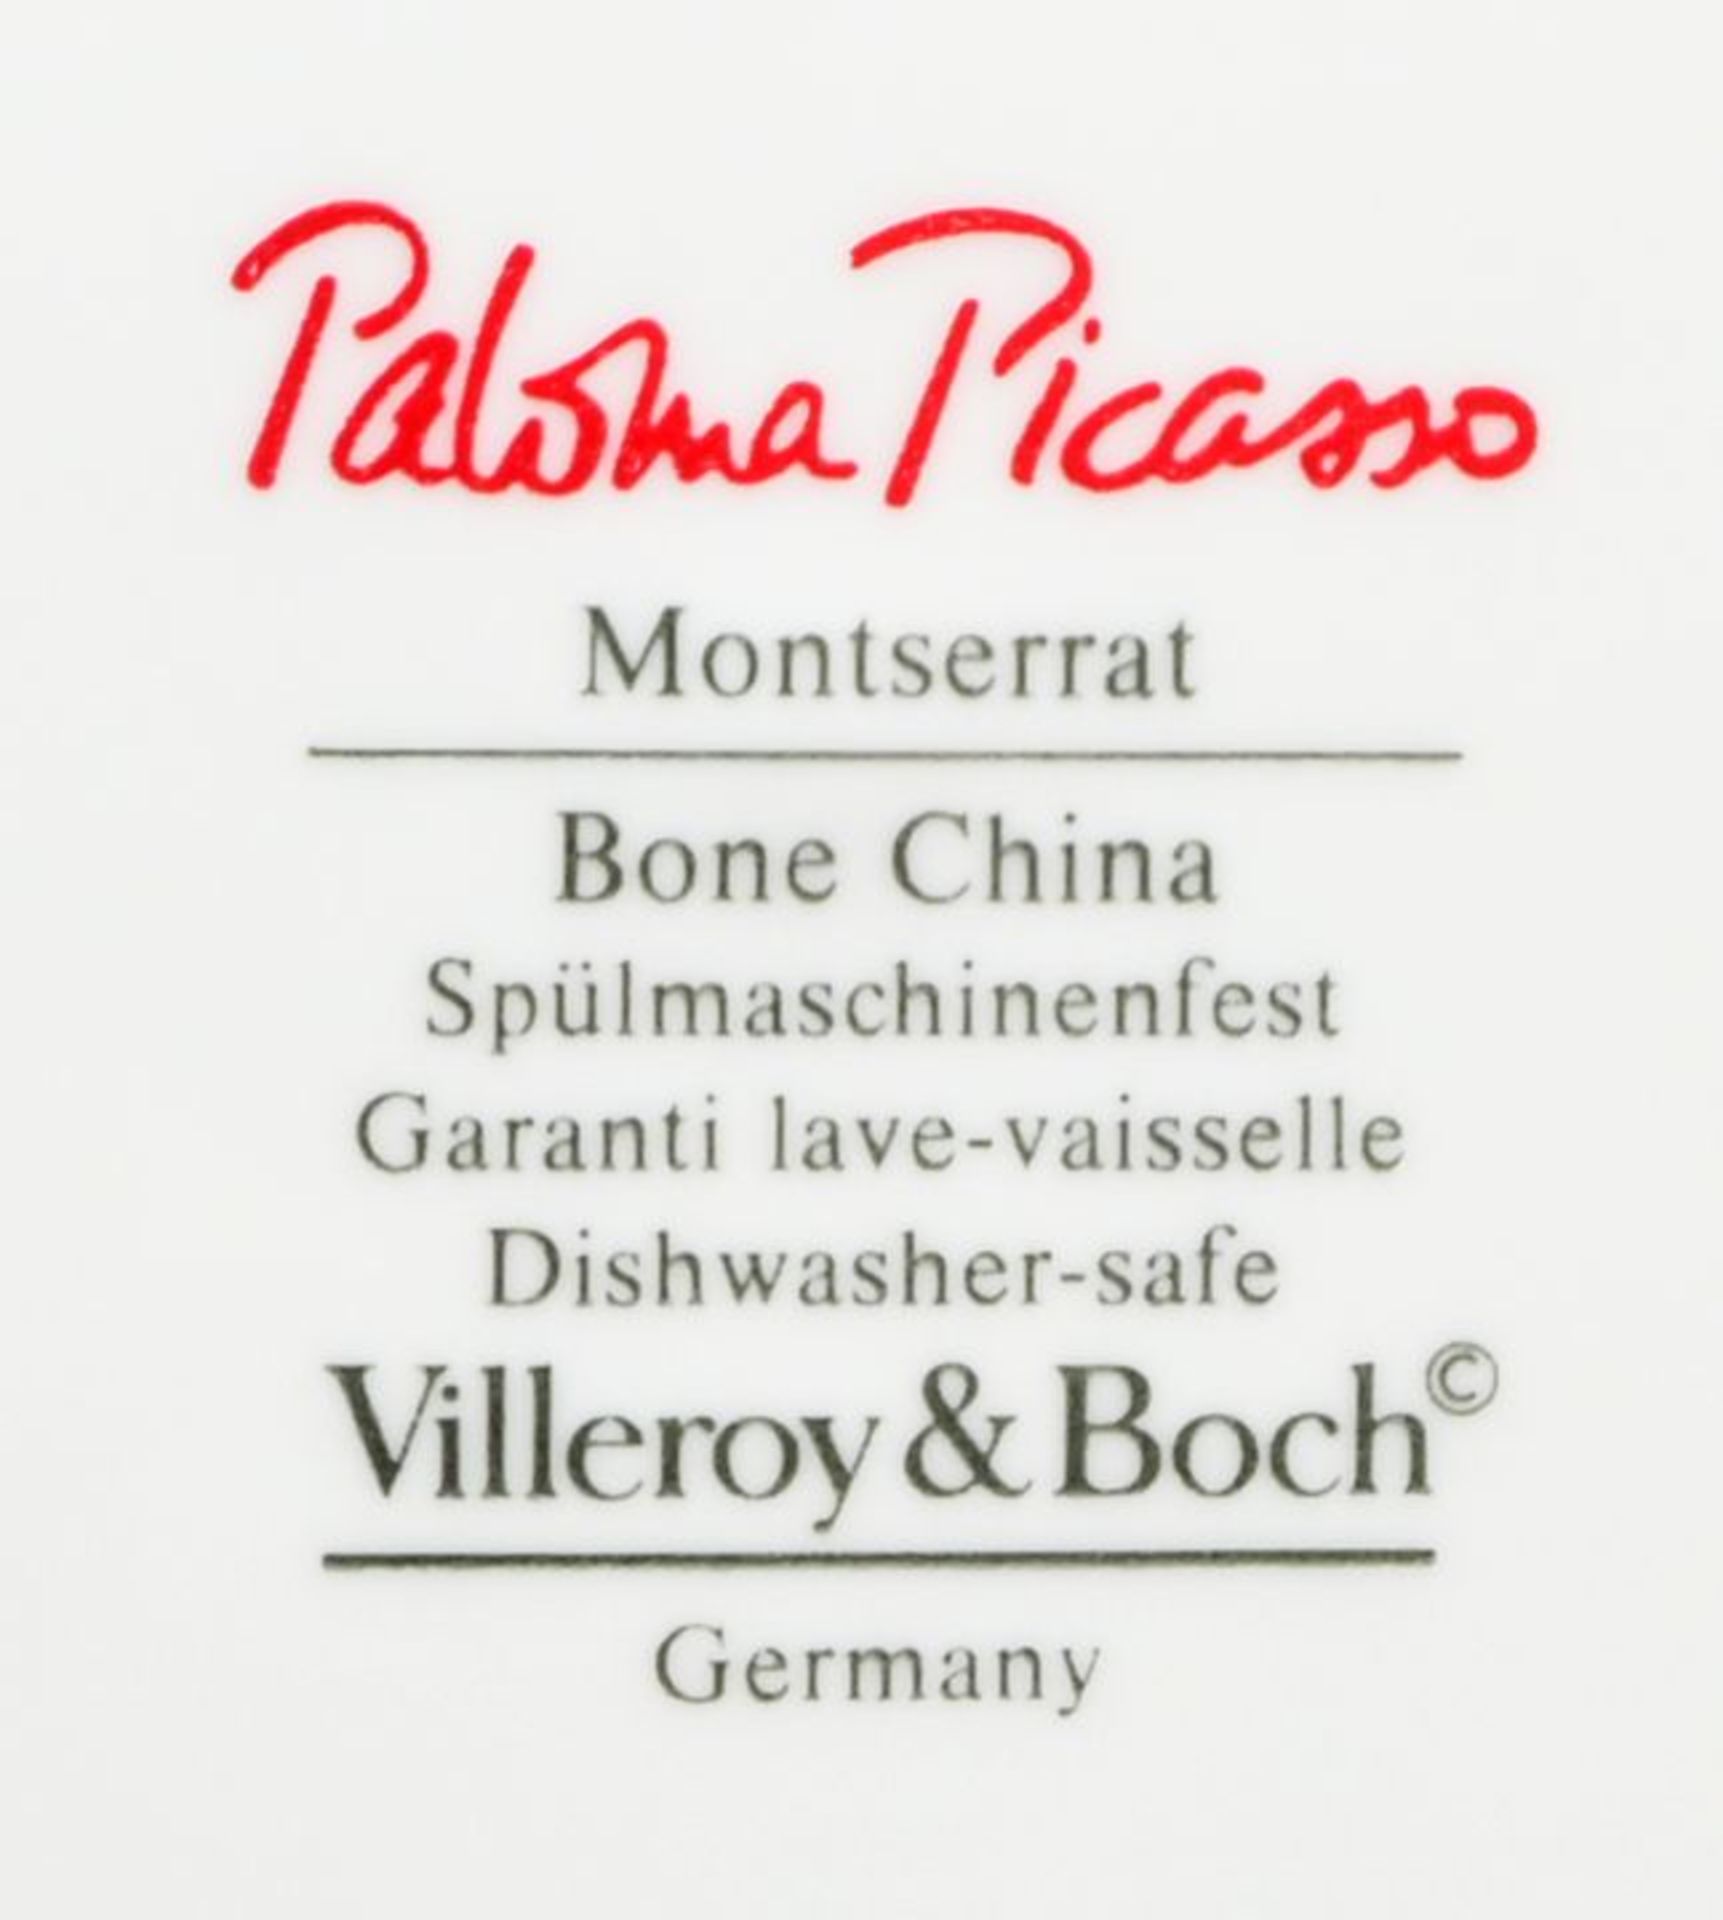 Gr. Restservice, Villeroy & Boch, Paloma Picasso / Remaining service - Bild 3 aus 3